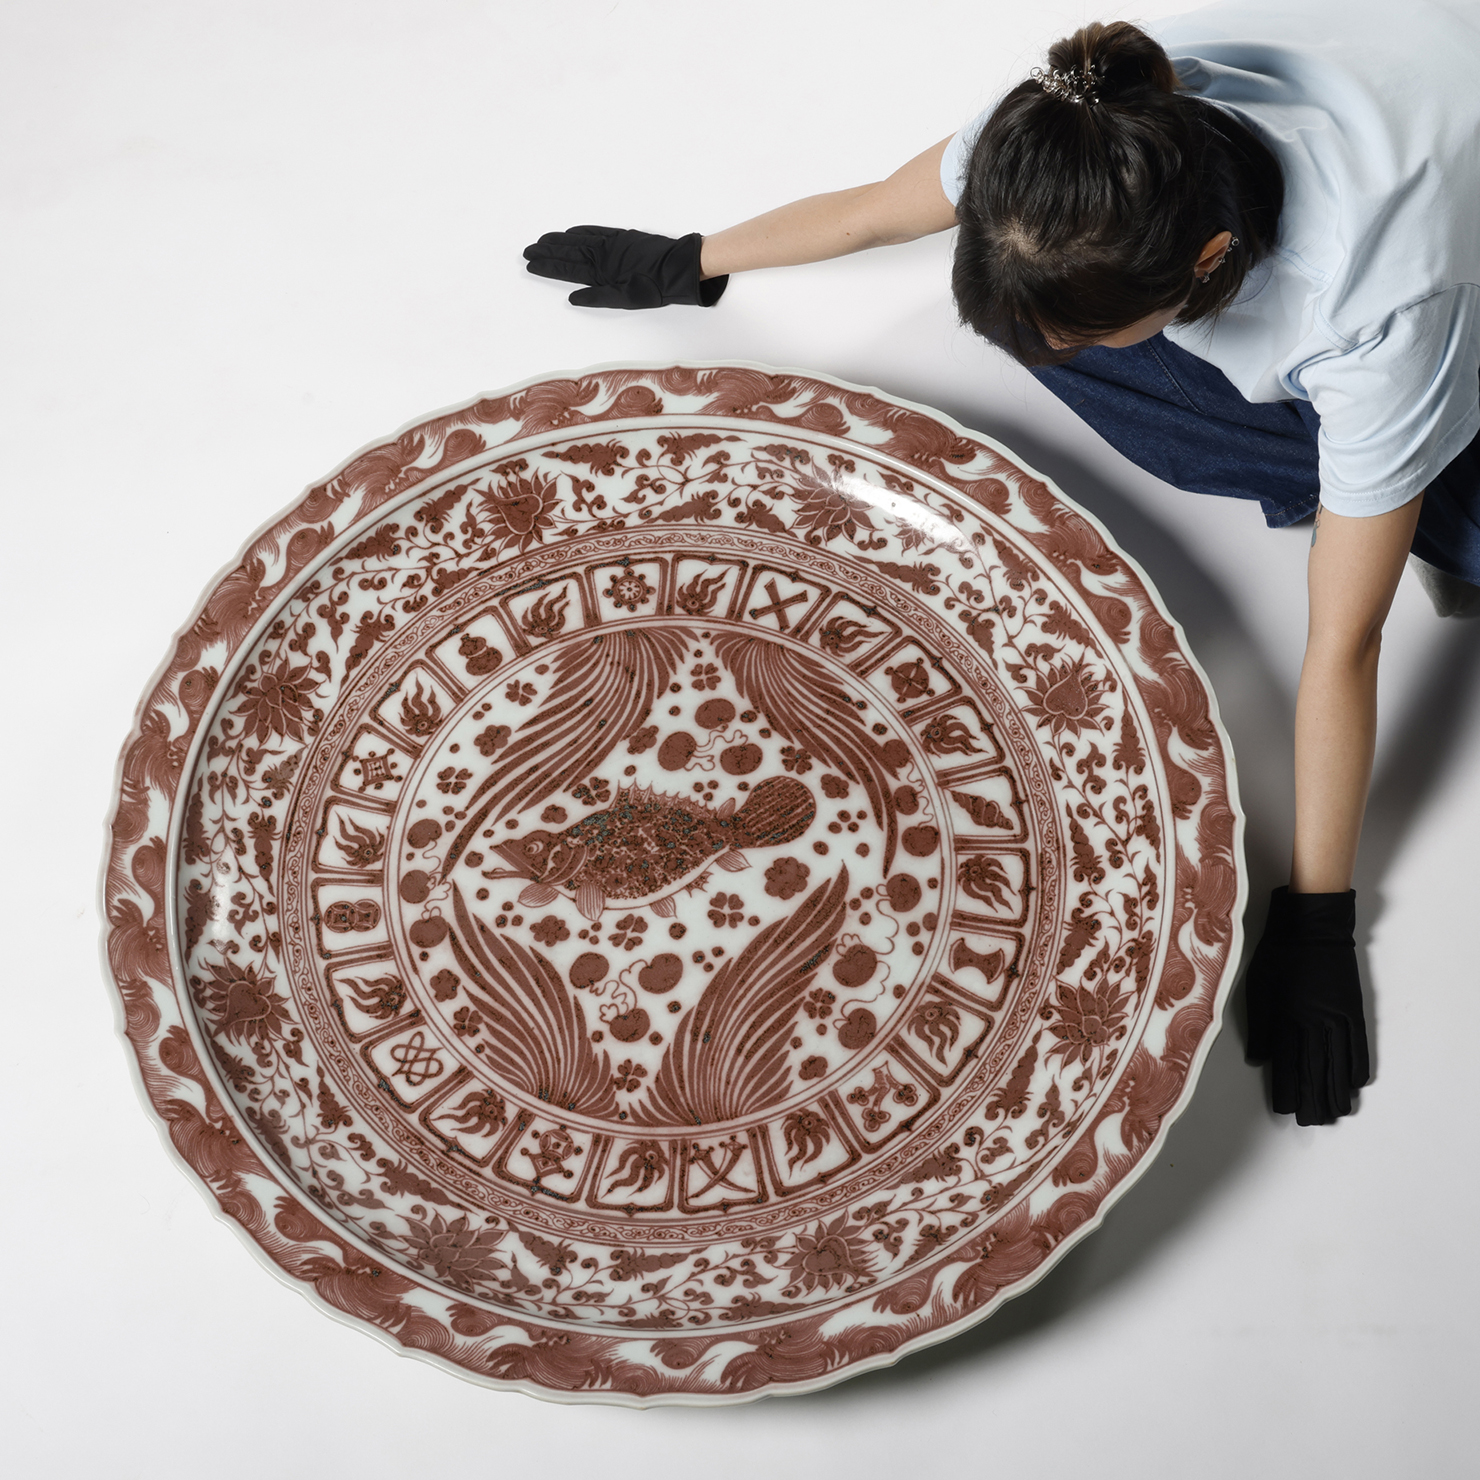 瘋了古陶瓷釉裡紅魚藻紋大賞盤重25kg 內地無法運送(PH-UAAH11)II - 補 